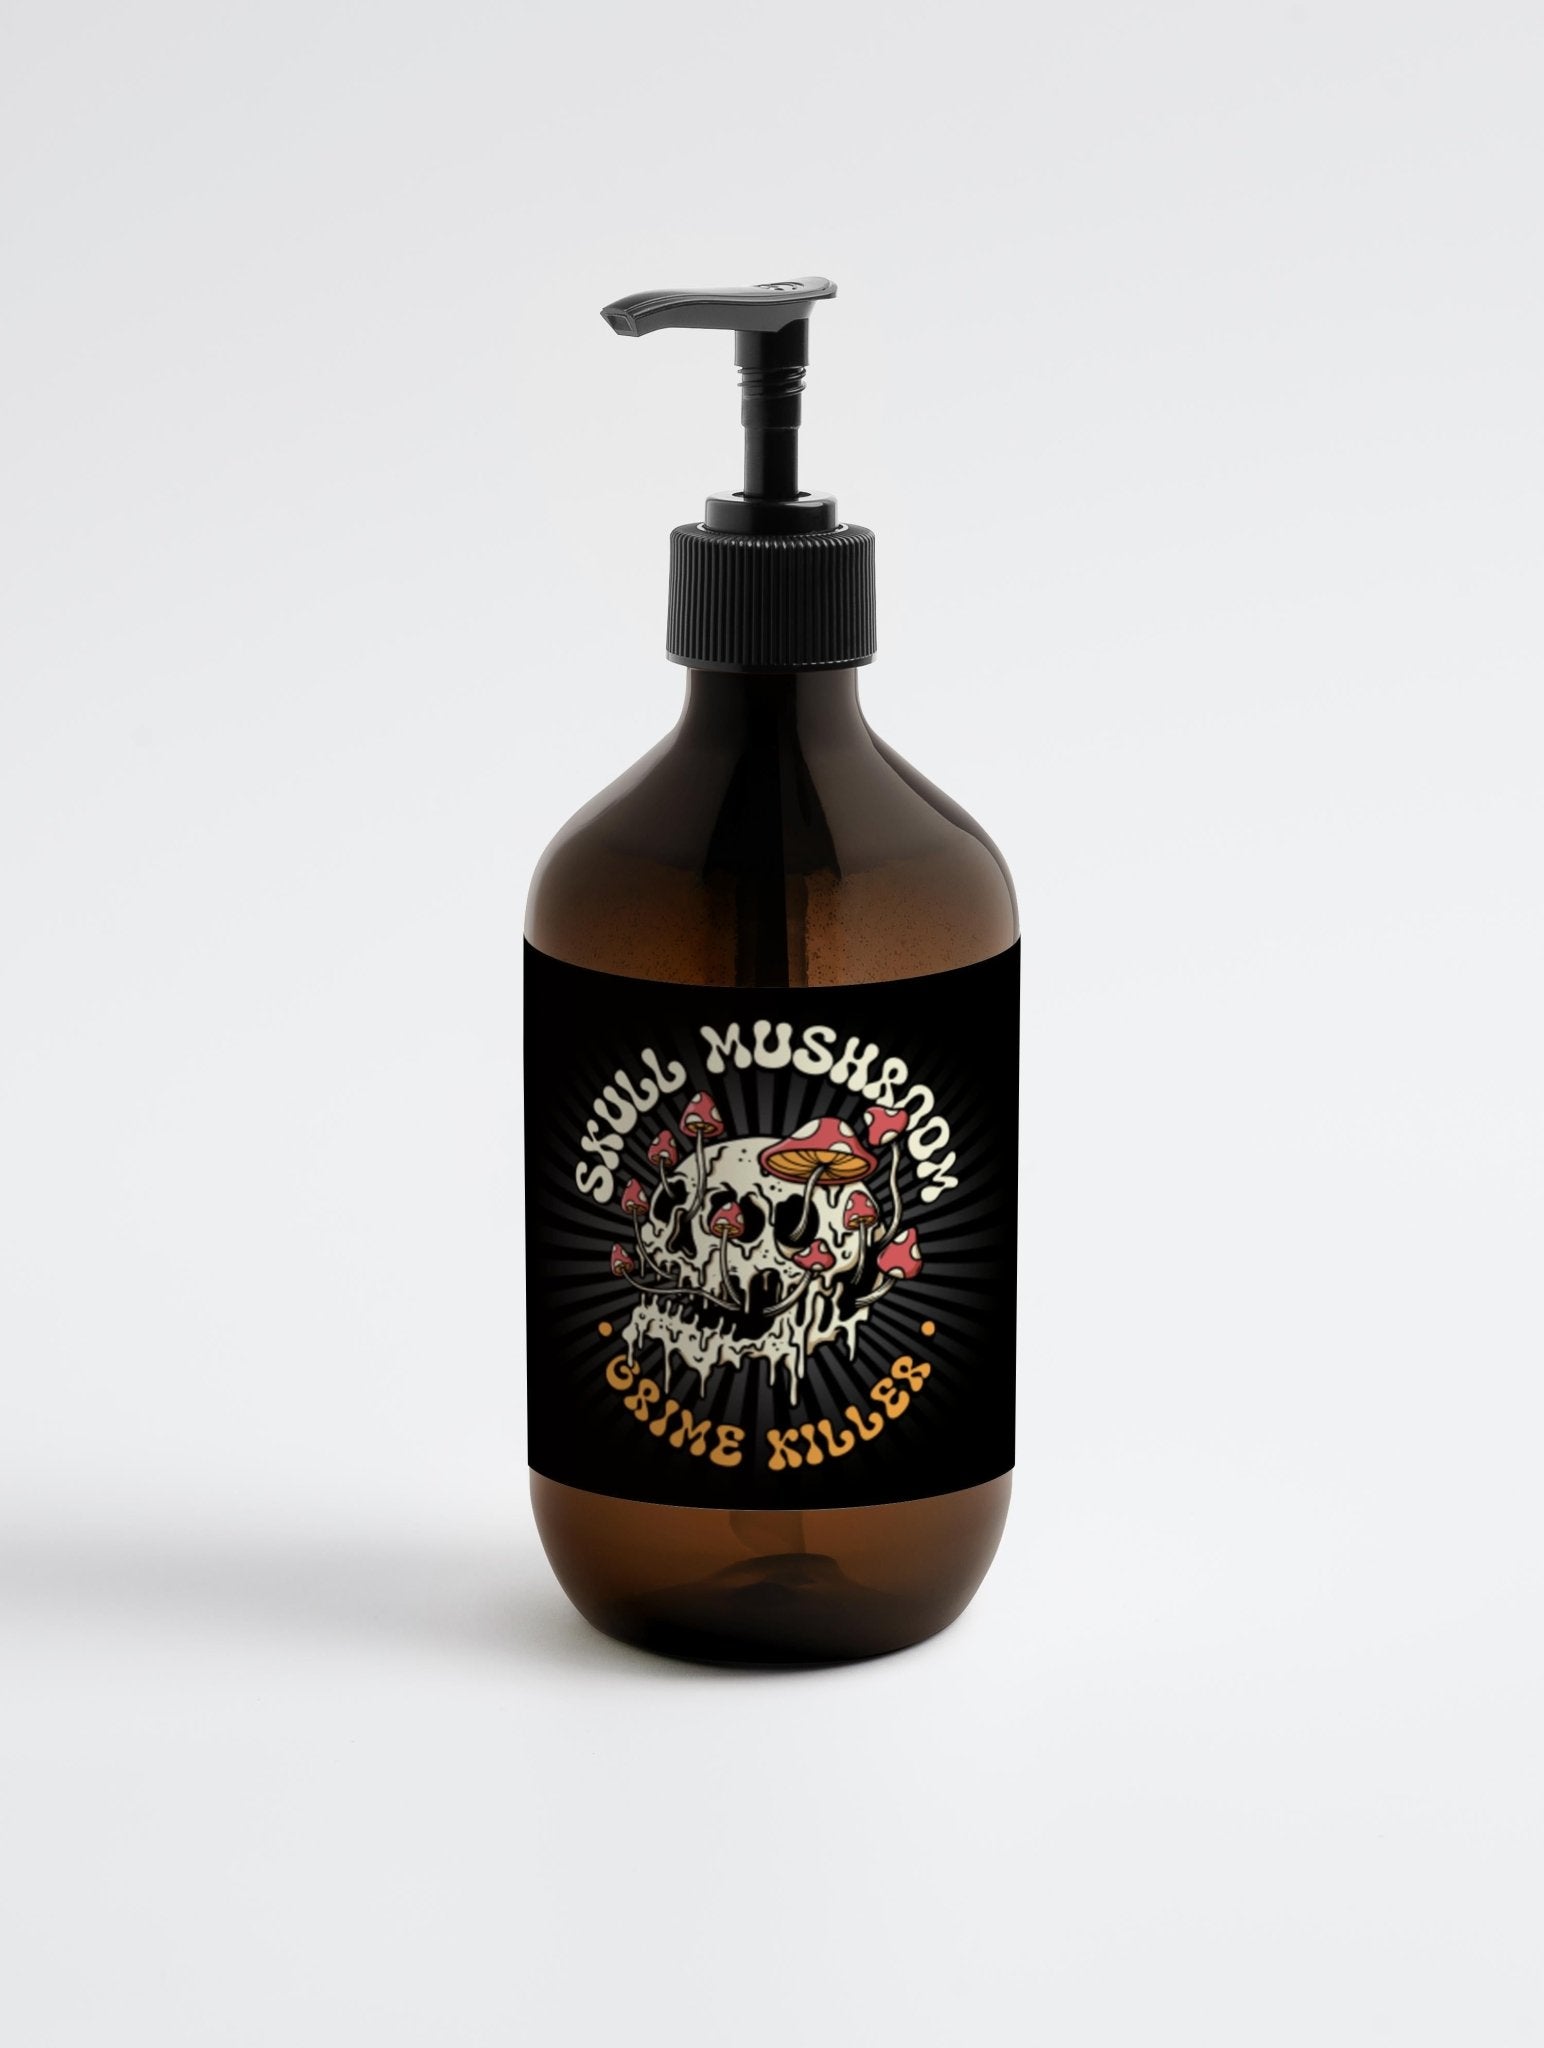 Landberk x Grime Killer Hand Wash #1 - Skull Mushroom Cosmetics Co.